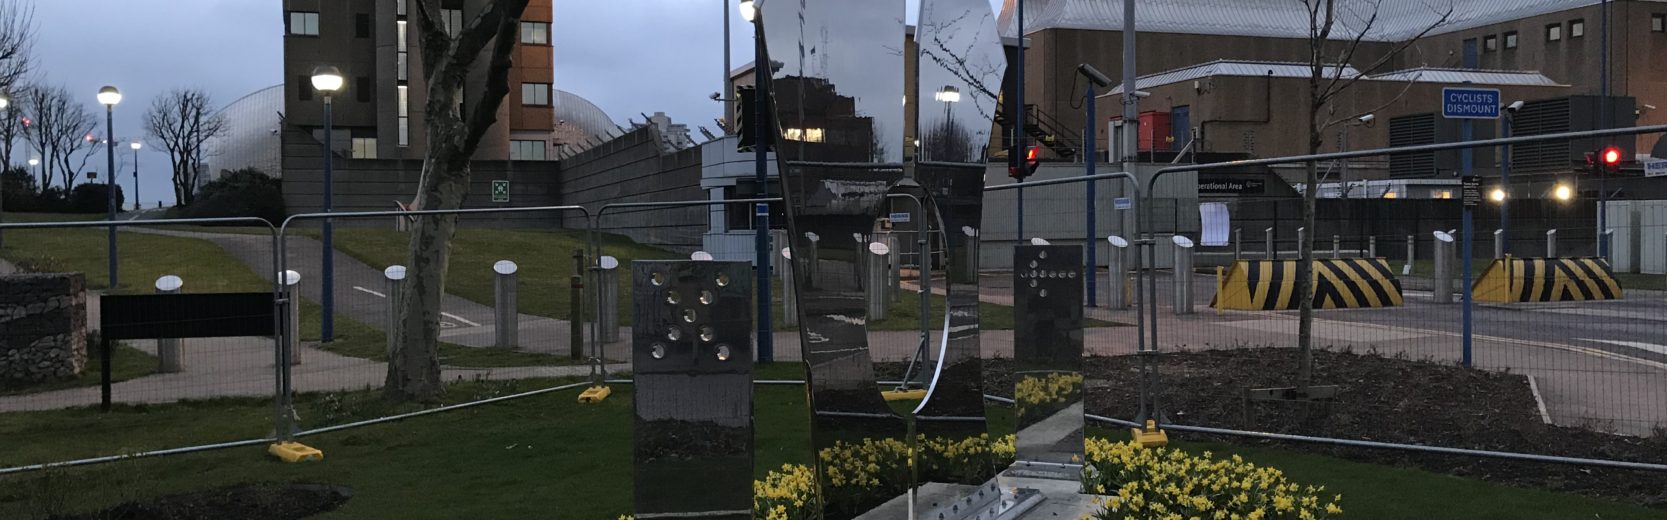 London thames barrier memorial feature mirror polish